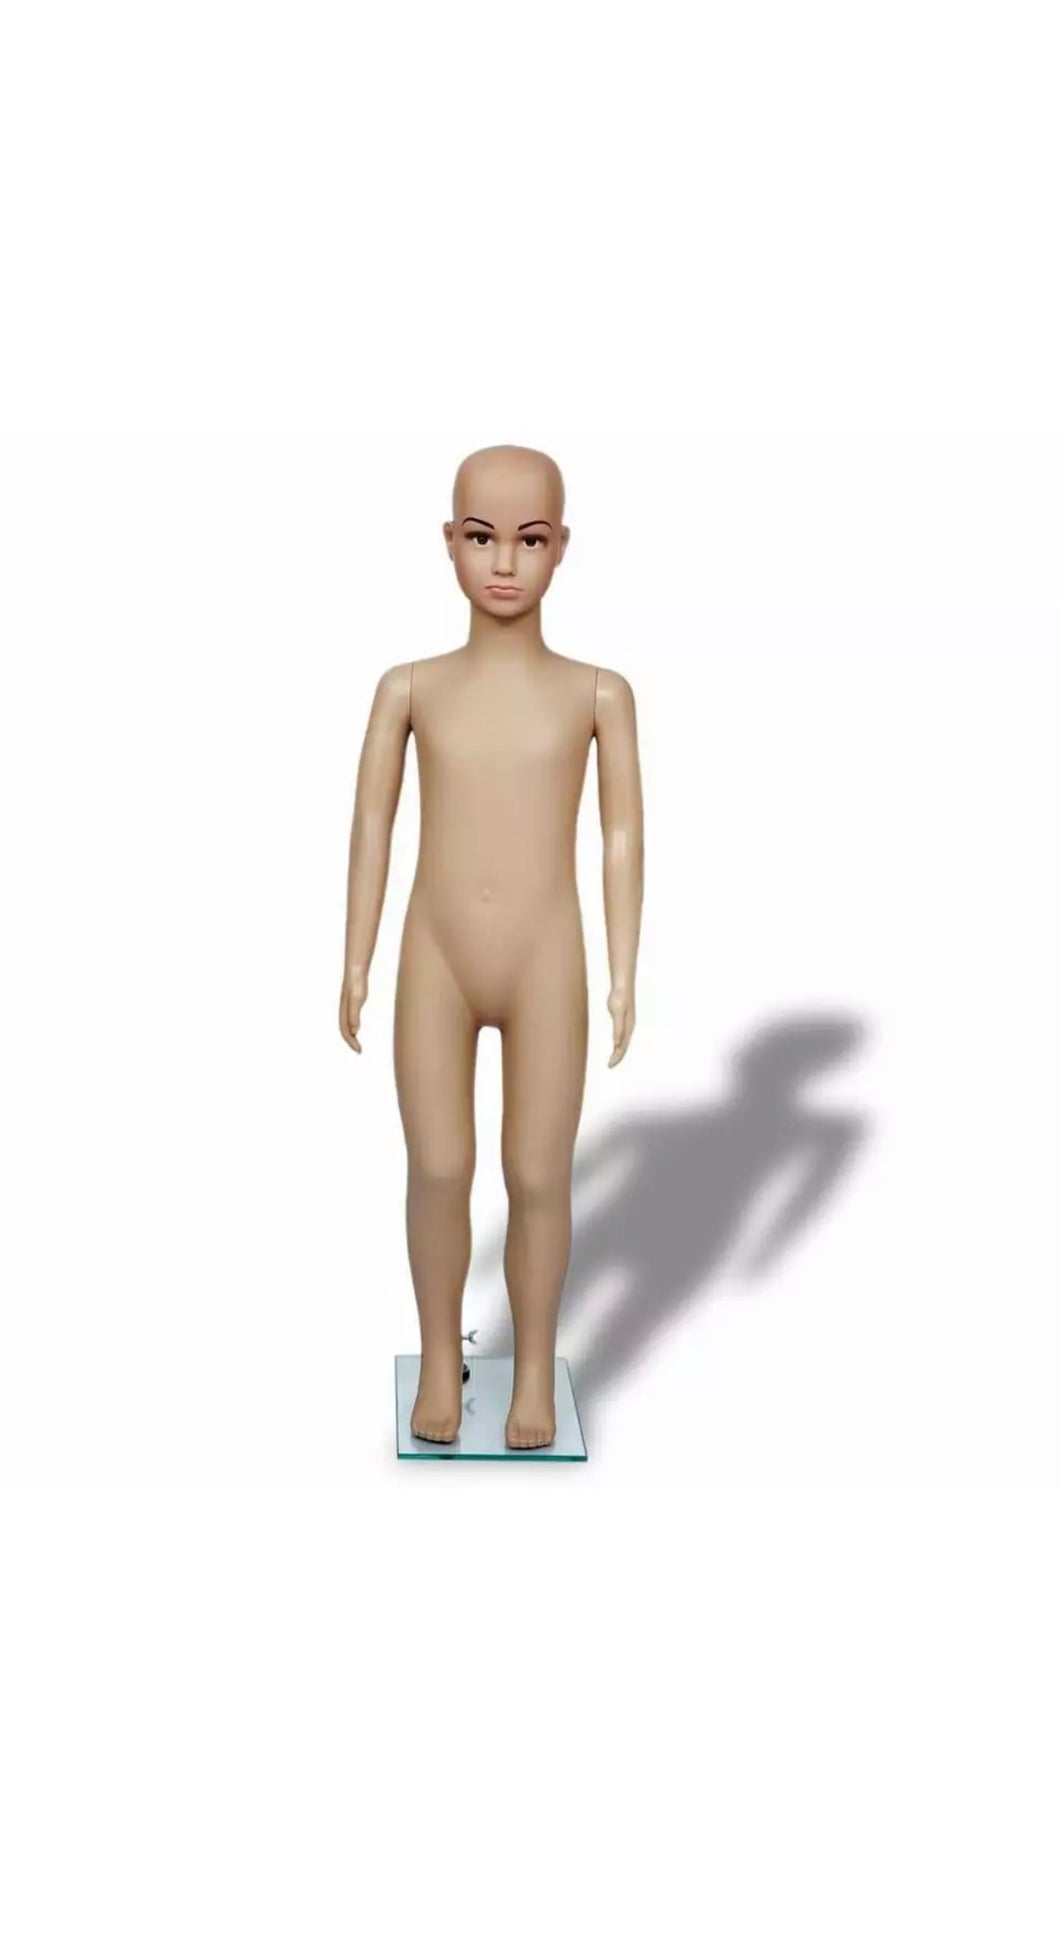 Unisex kids mannequin 51” height